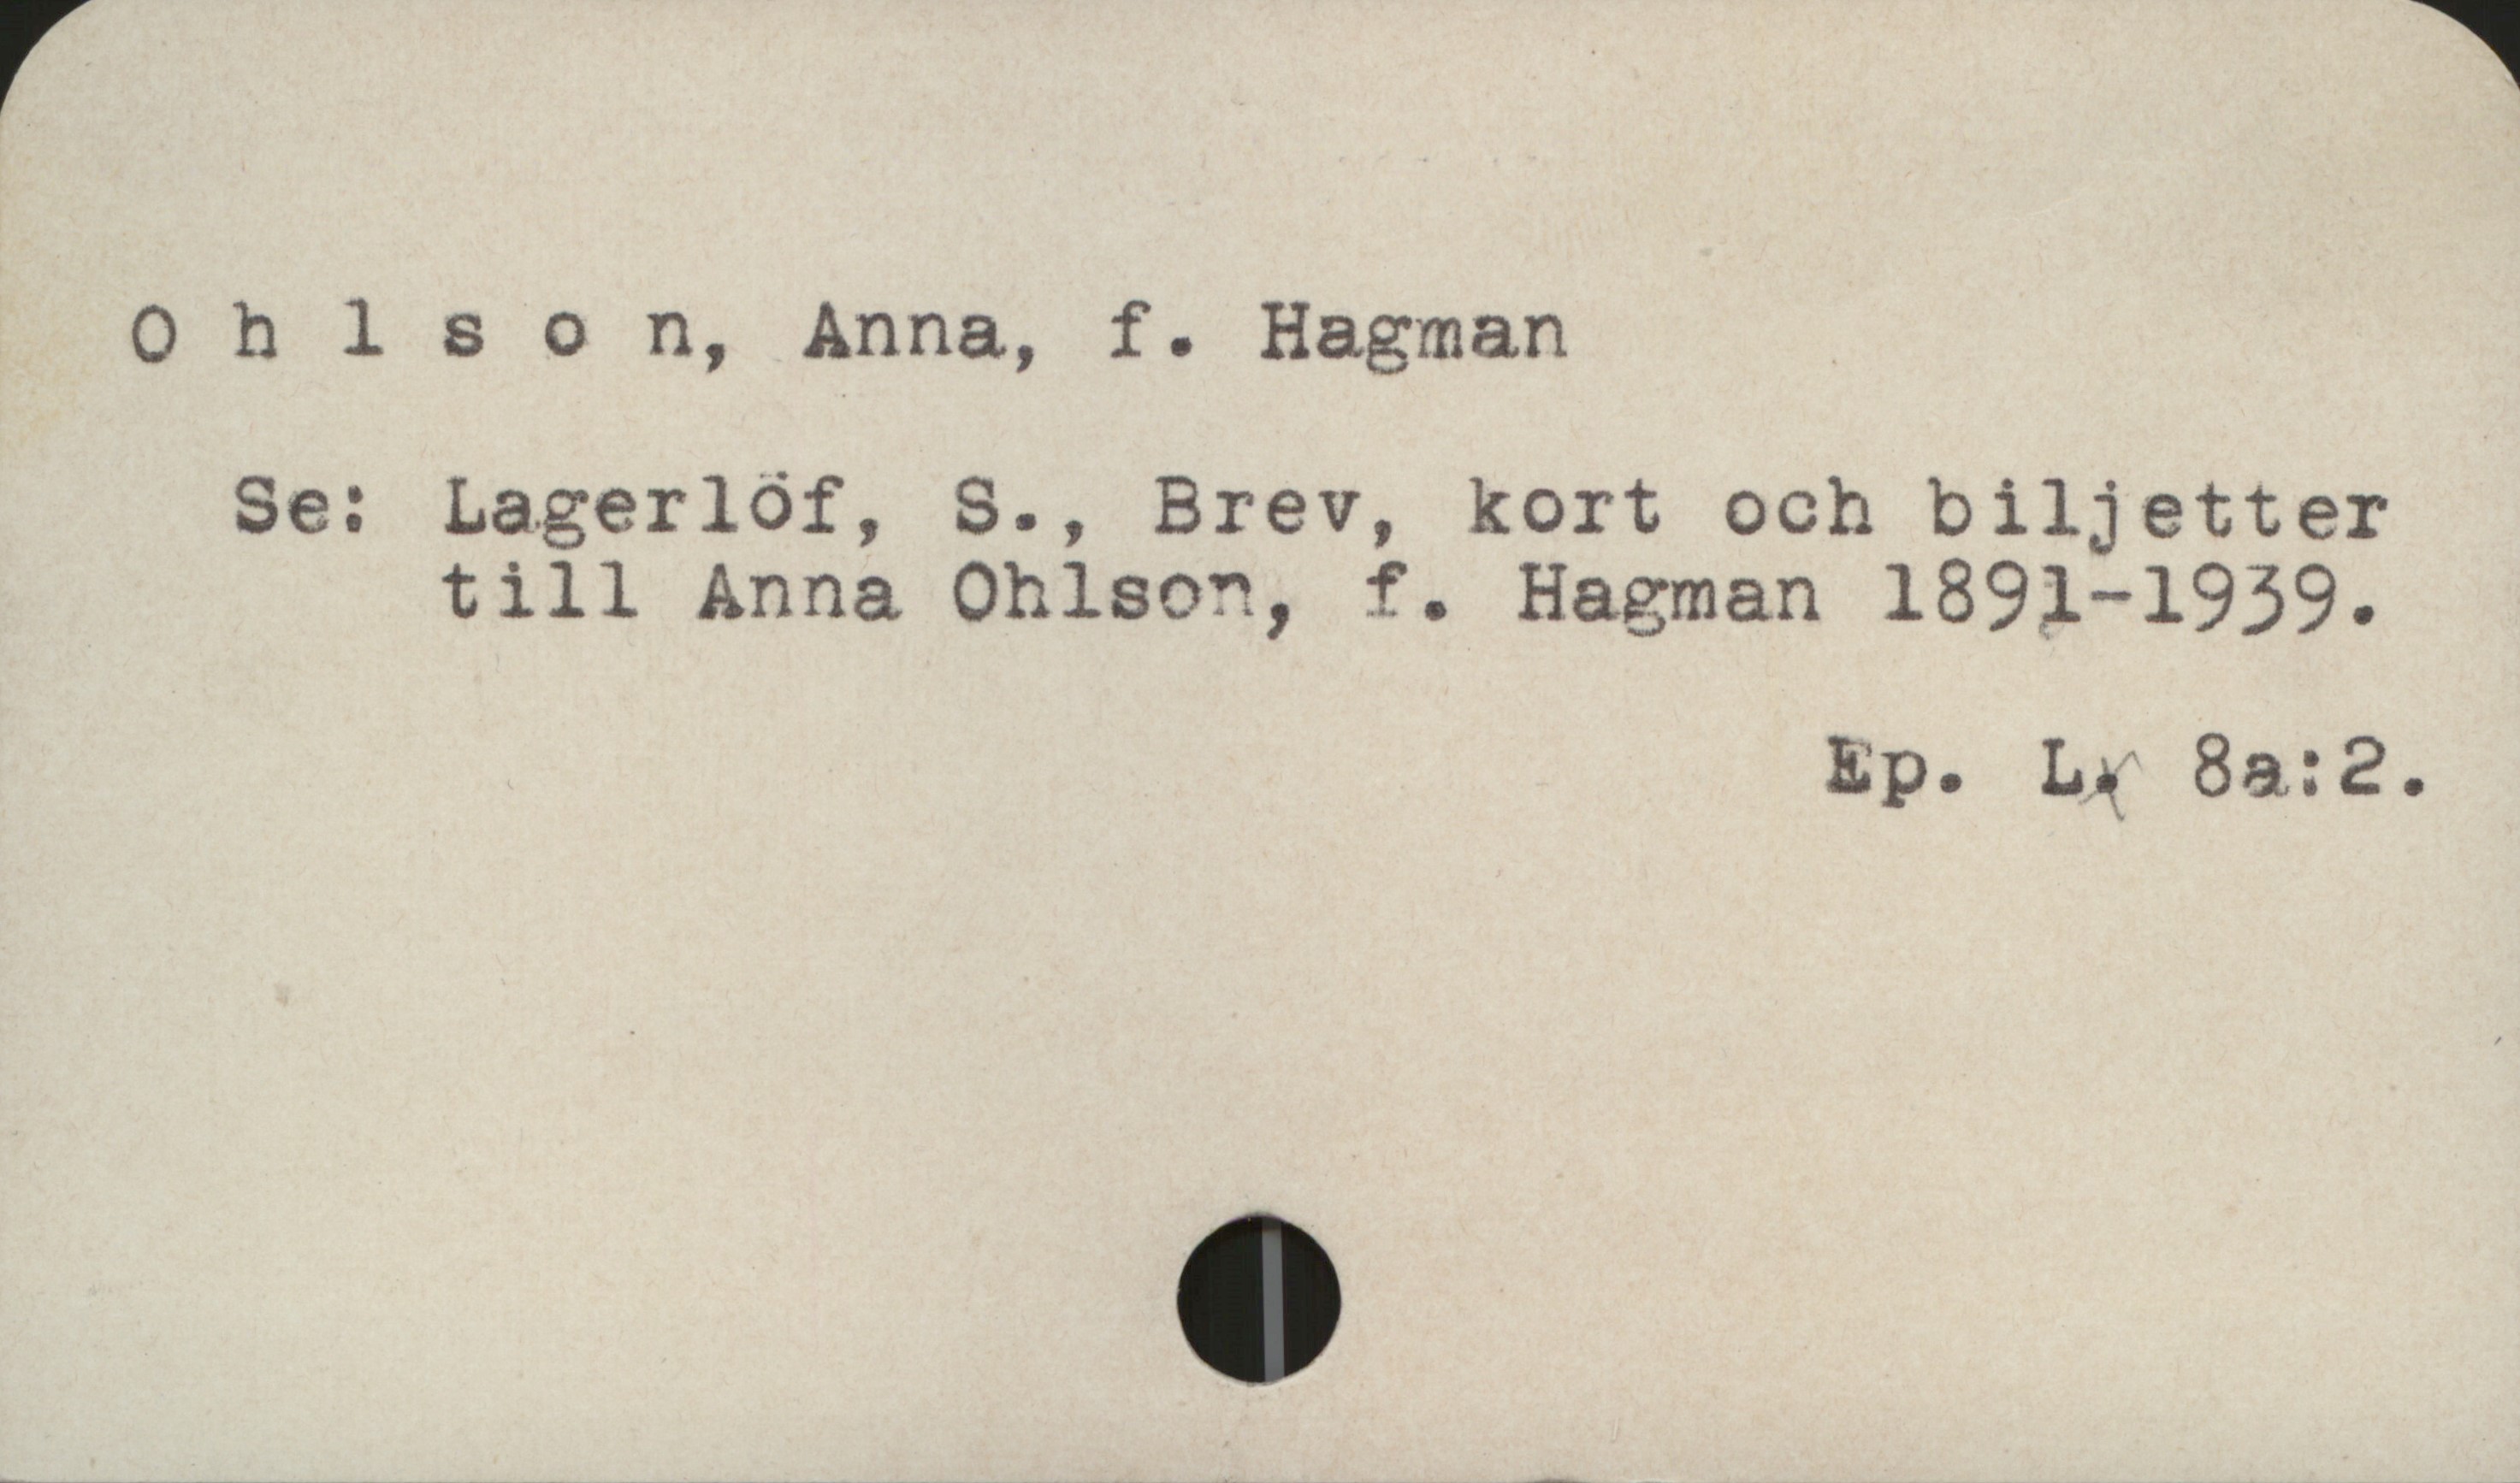 Ohlson, Anna, f. Hagman Ohlson, Anna, f. Hagman
Se: Lagerlöf, S., Brev, kort och biljetter
till Anna Ohlson, f. Hagman 1891-1939.
Ep. L. 8a:2.